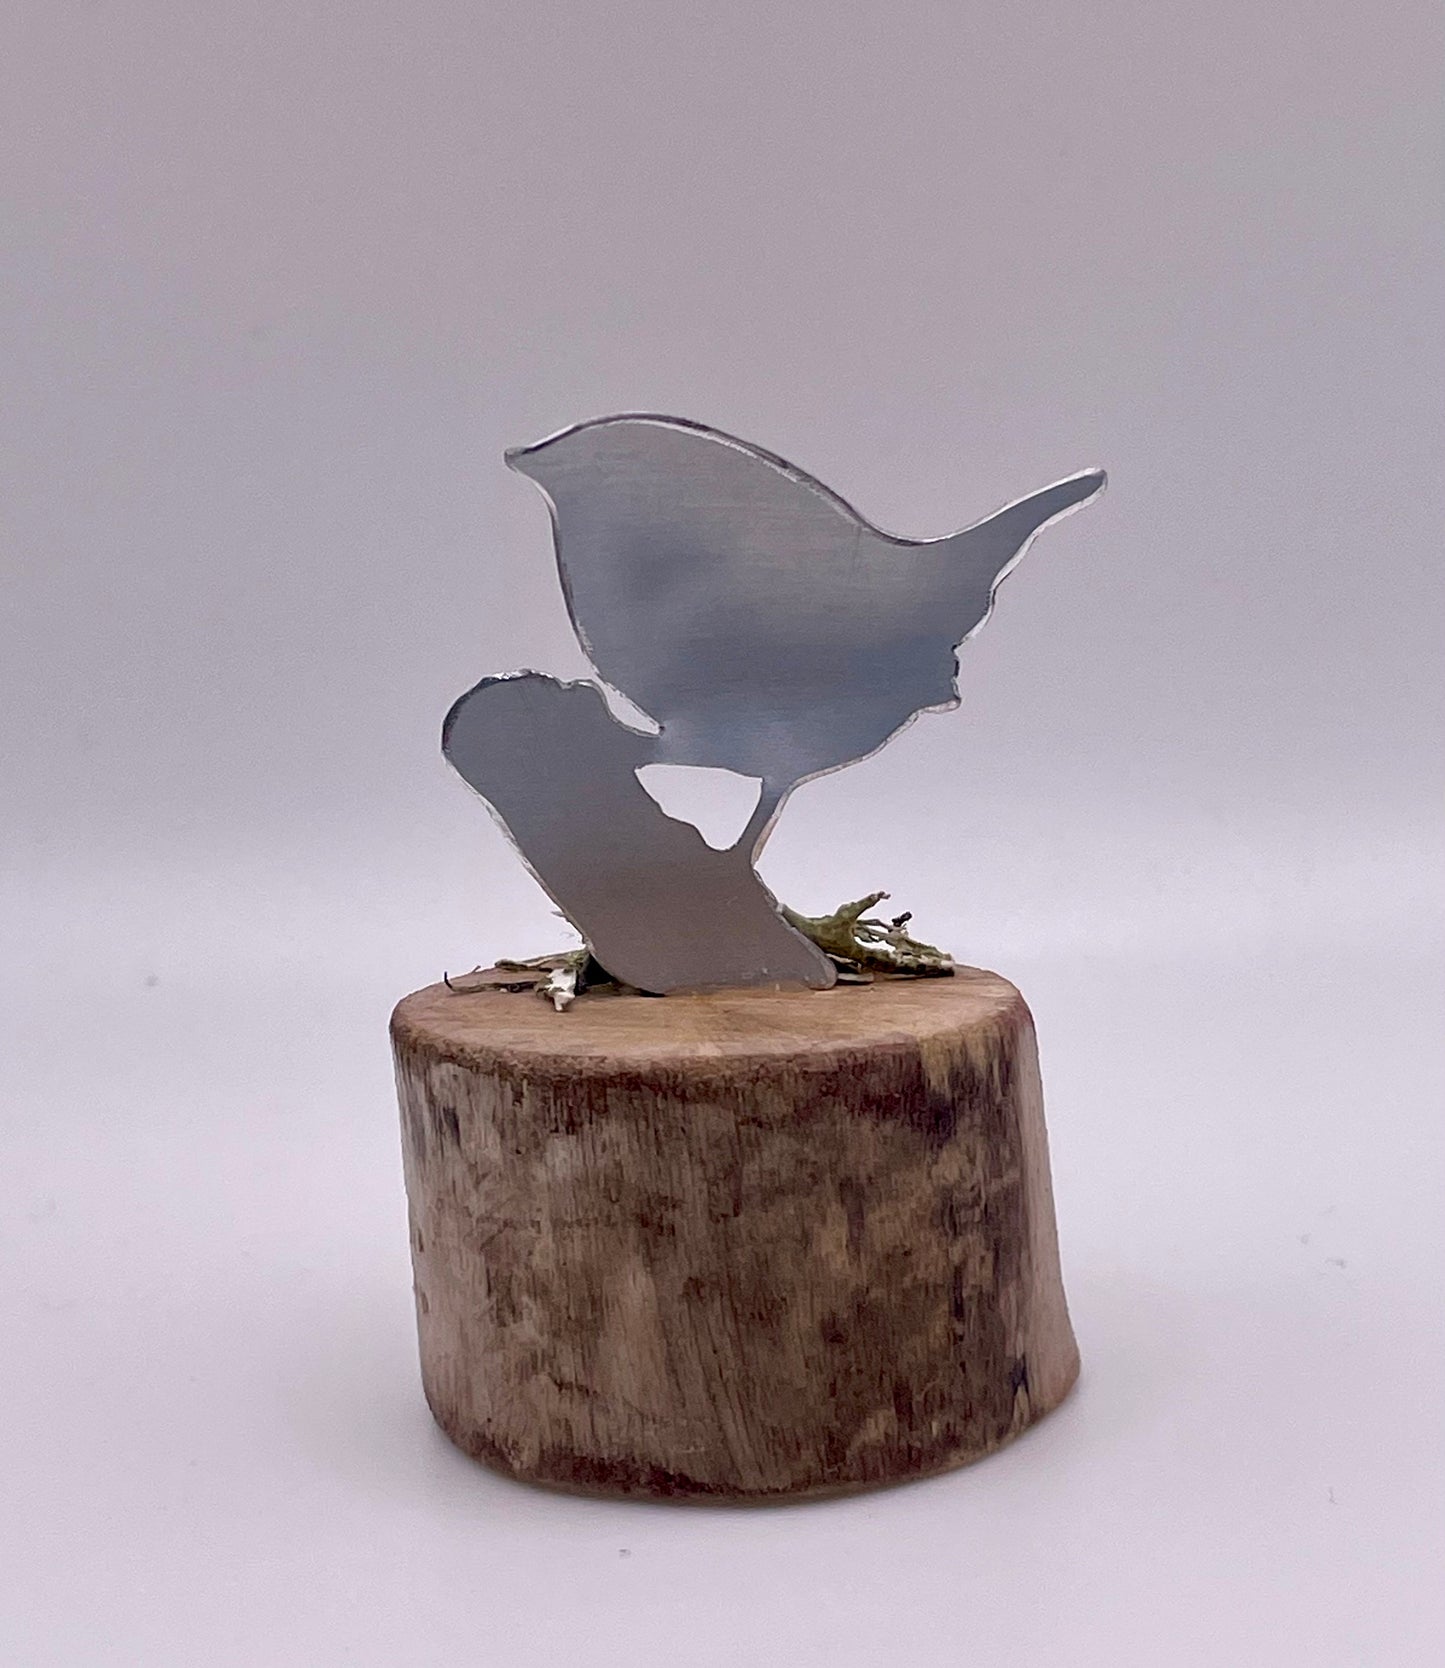 Mini Wren - Mini Wren Sculpture - Metal bird - Metal Wren - Wren on Wood - Miniature Ornament - Ministure Birds - Bird gift - Nature in Mini